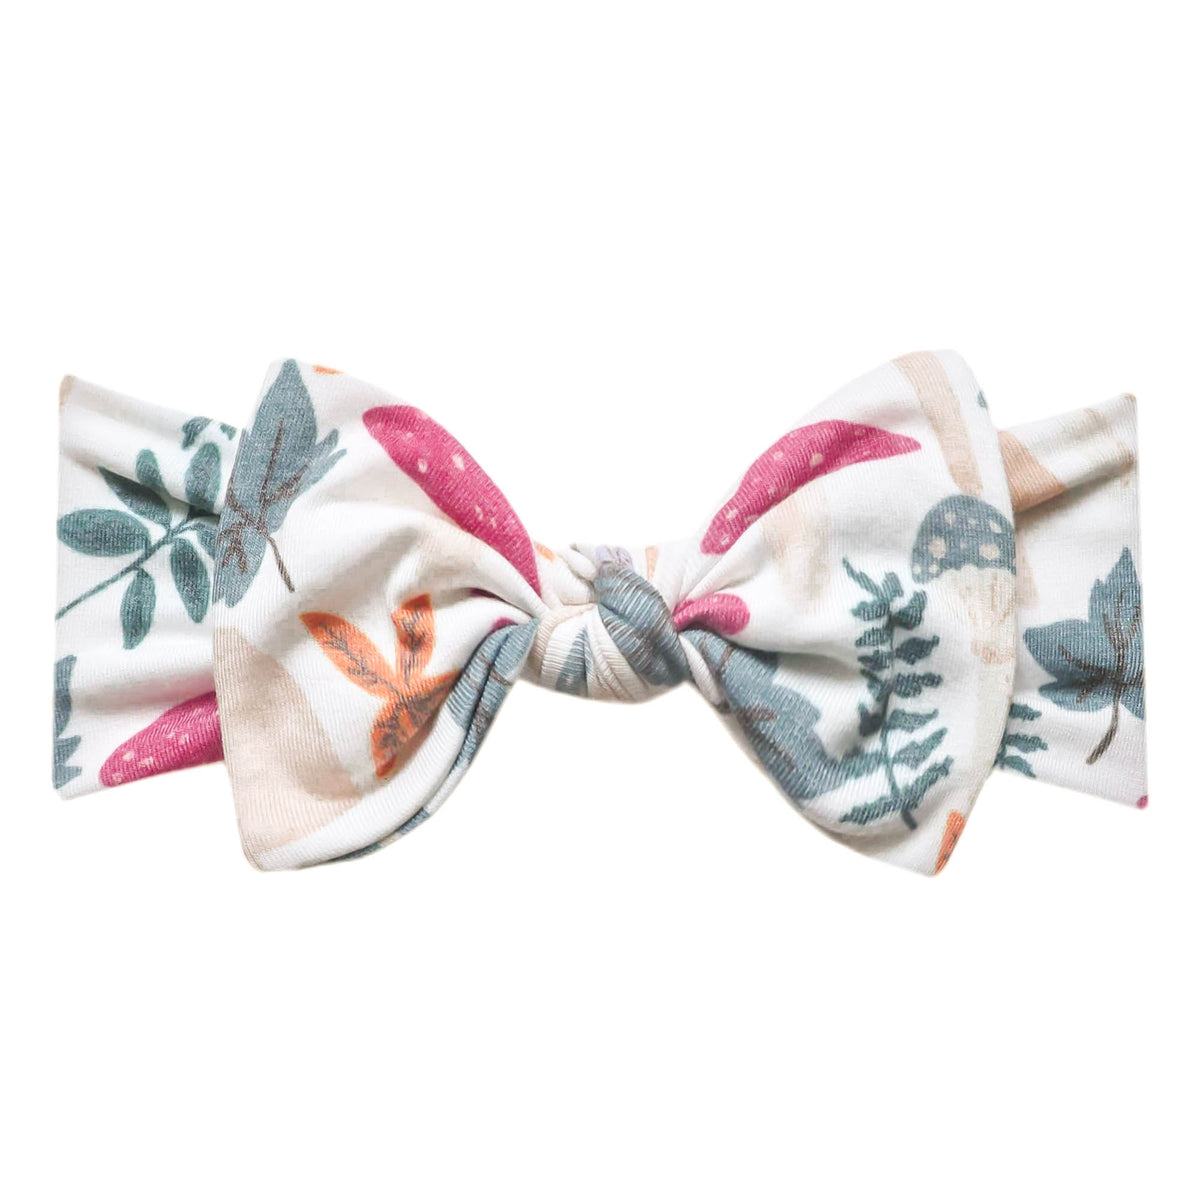 Knit Headband Bow - Ivy